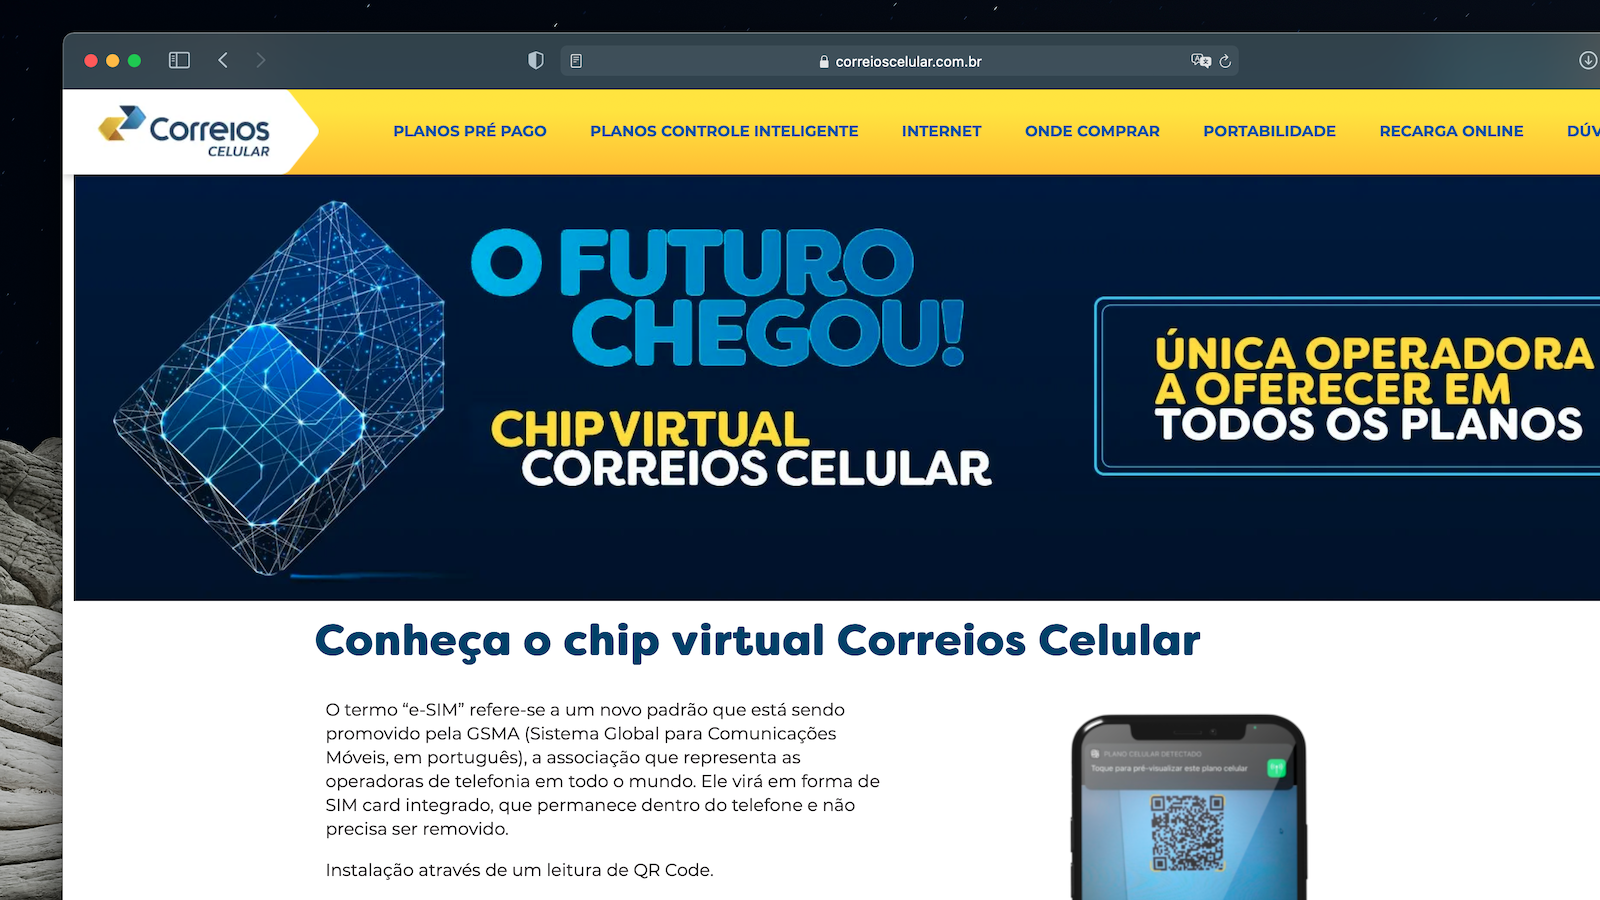 Correios Celular lança chip virtual eSIM com instalação remota | Telecomunicações